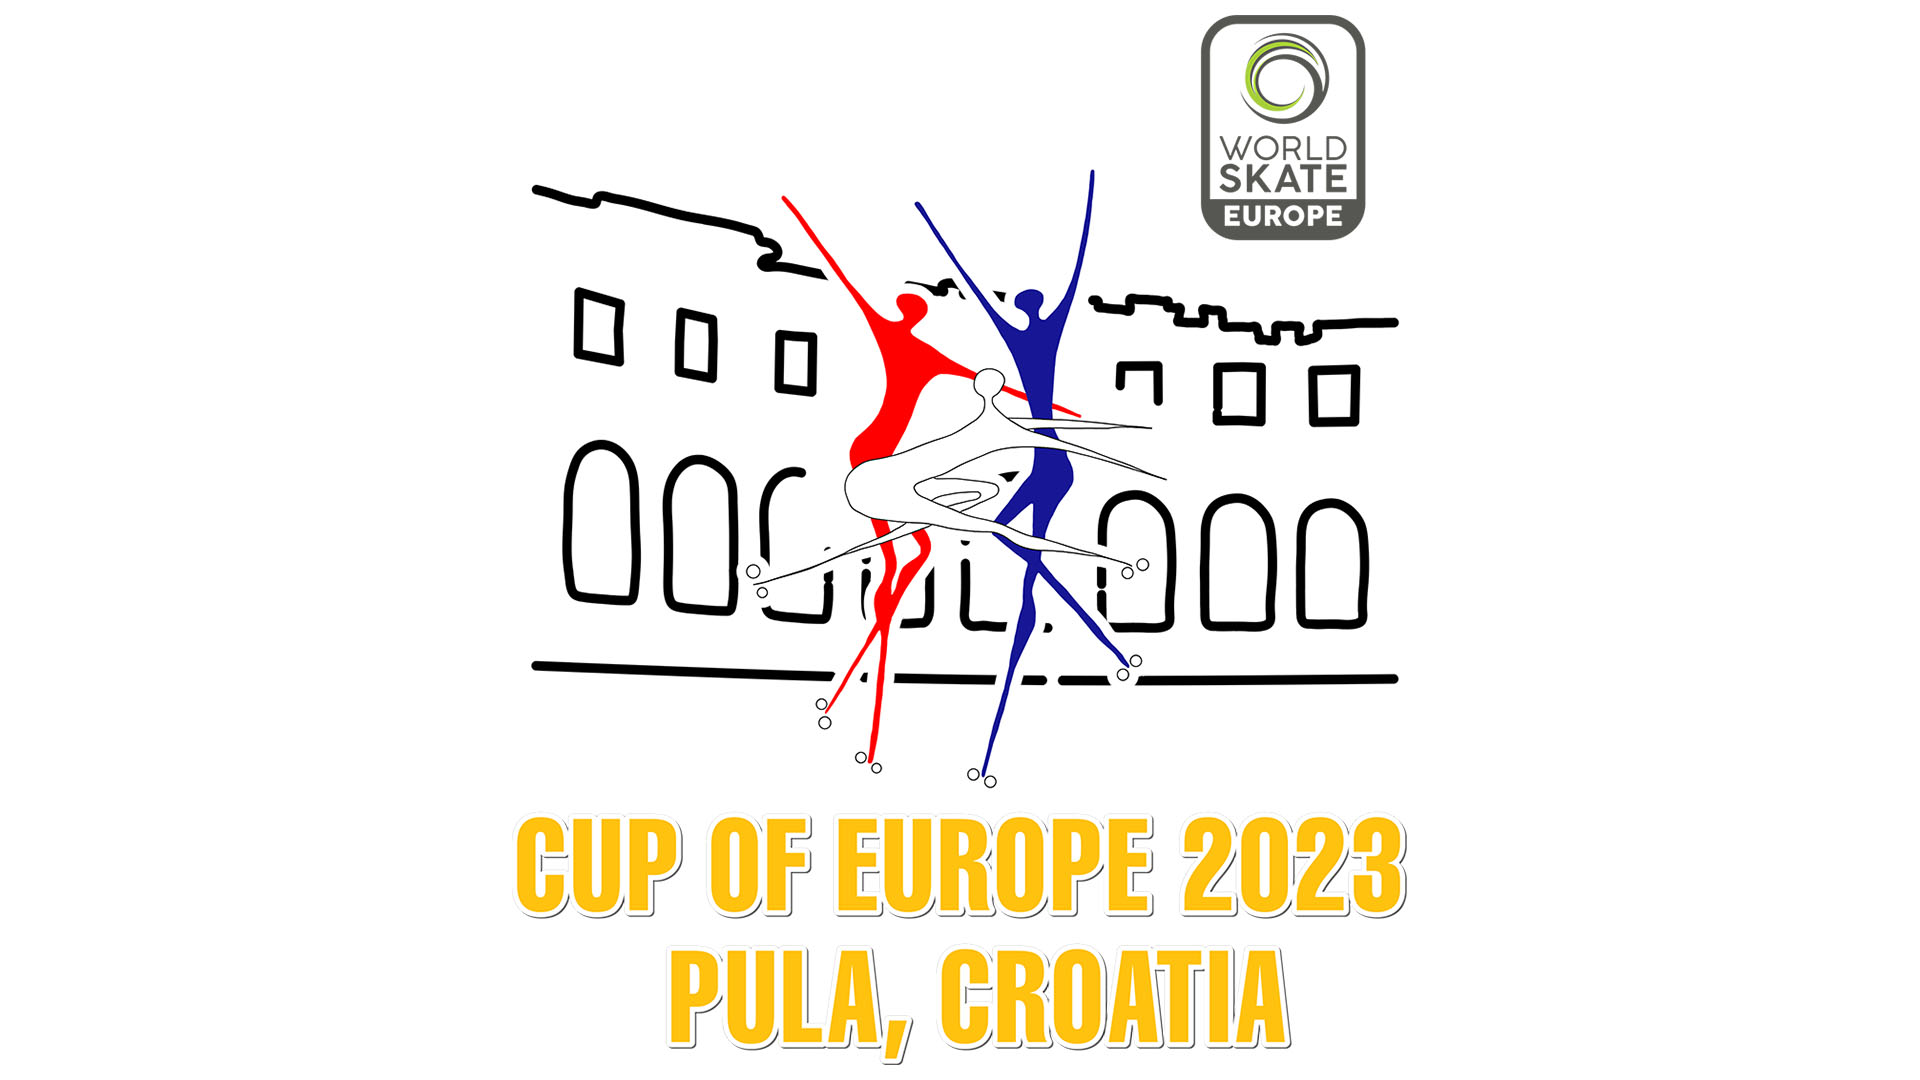 COPA D'EUROPA PULA 2023